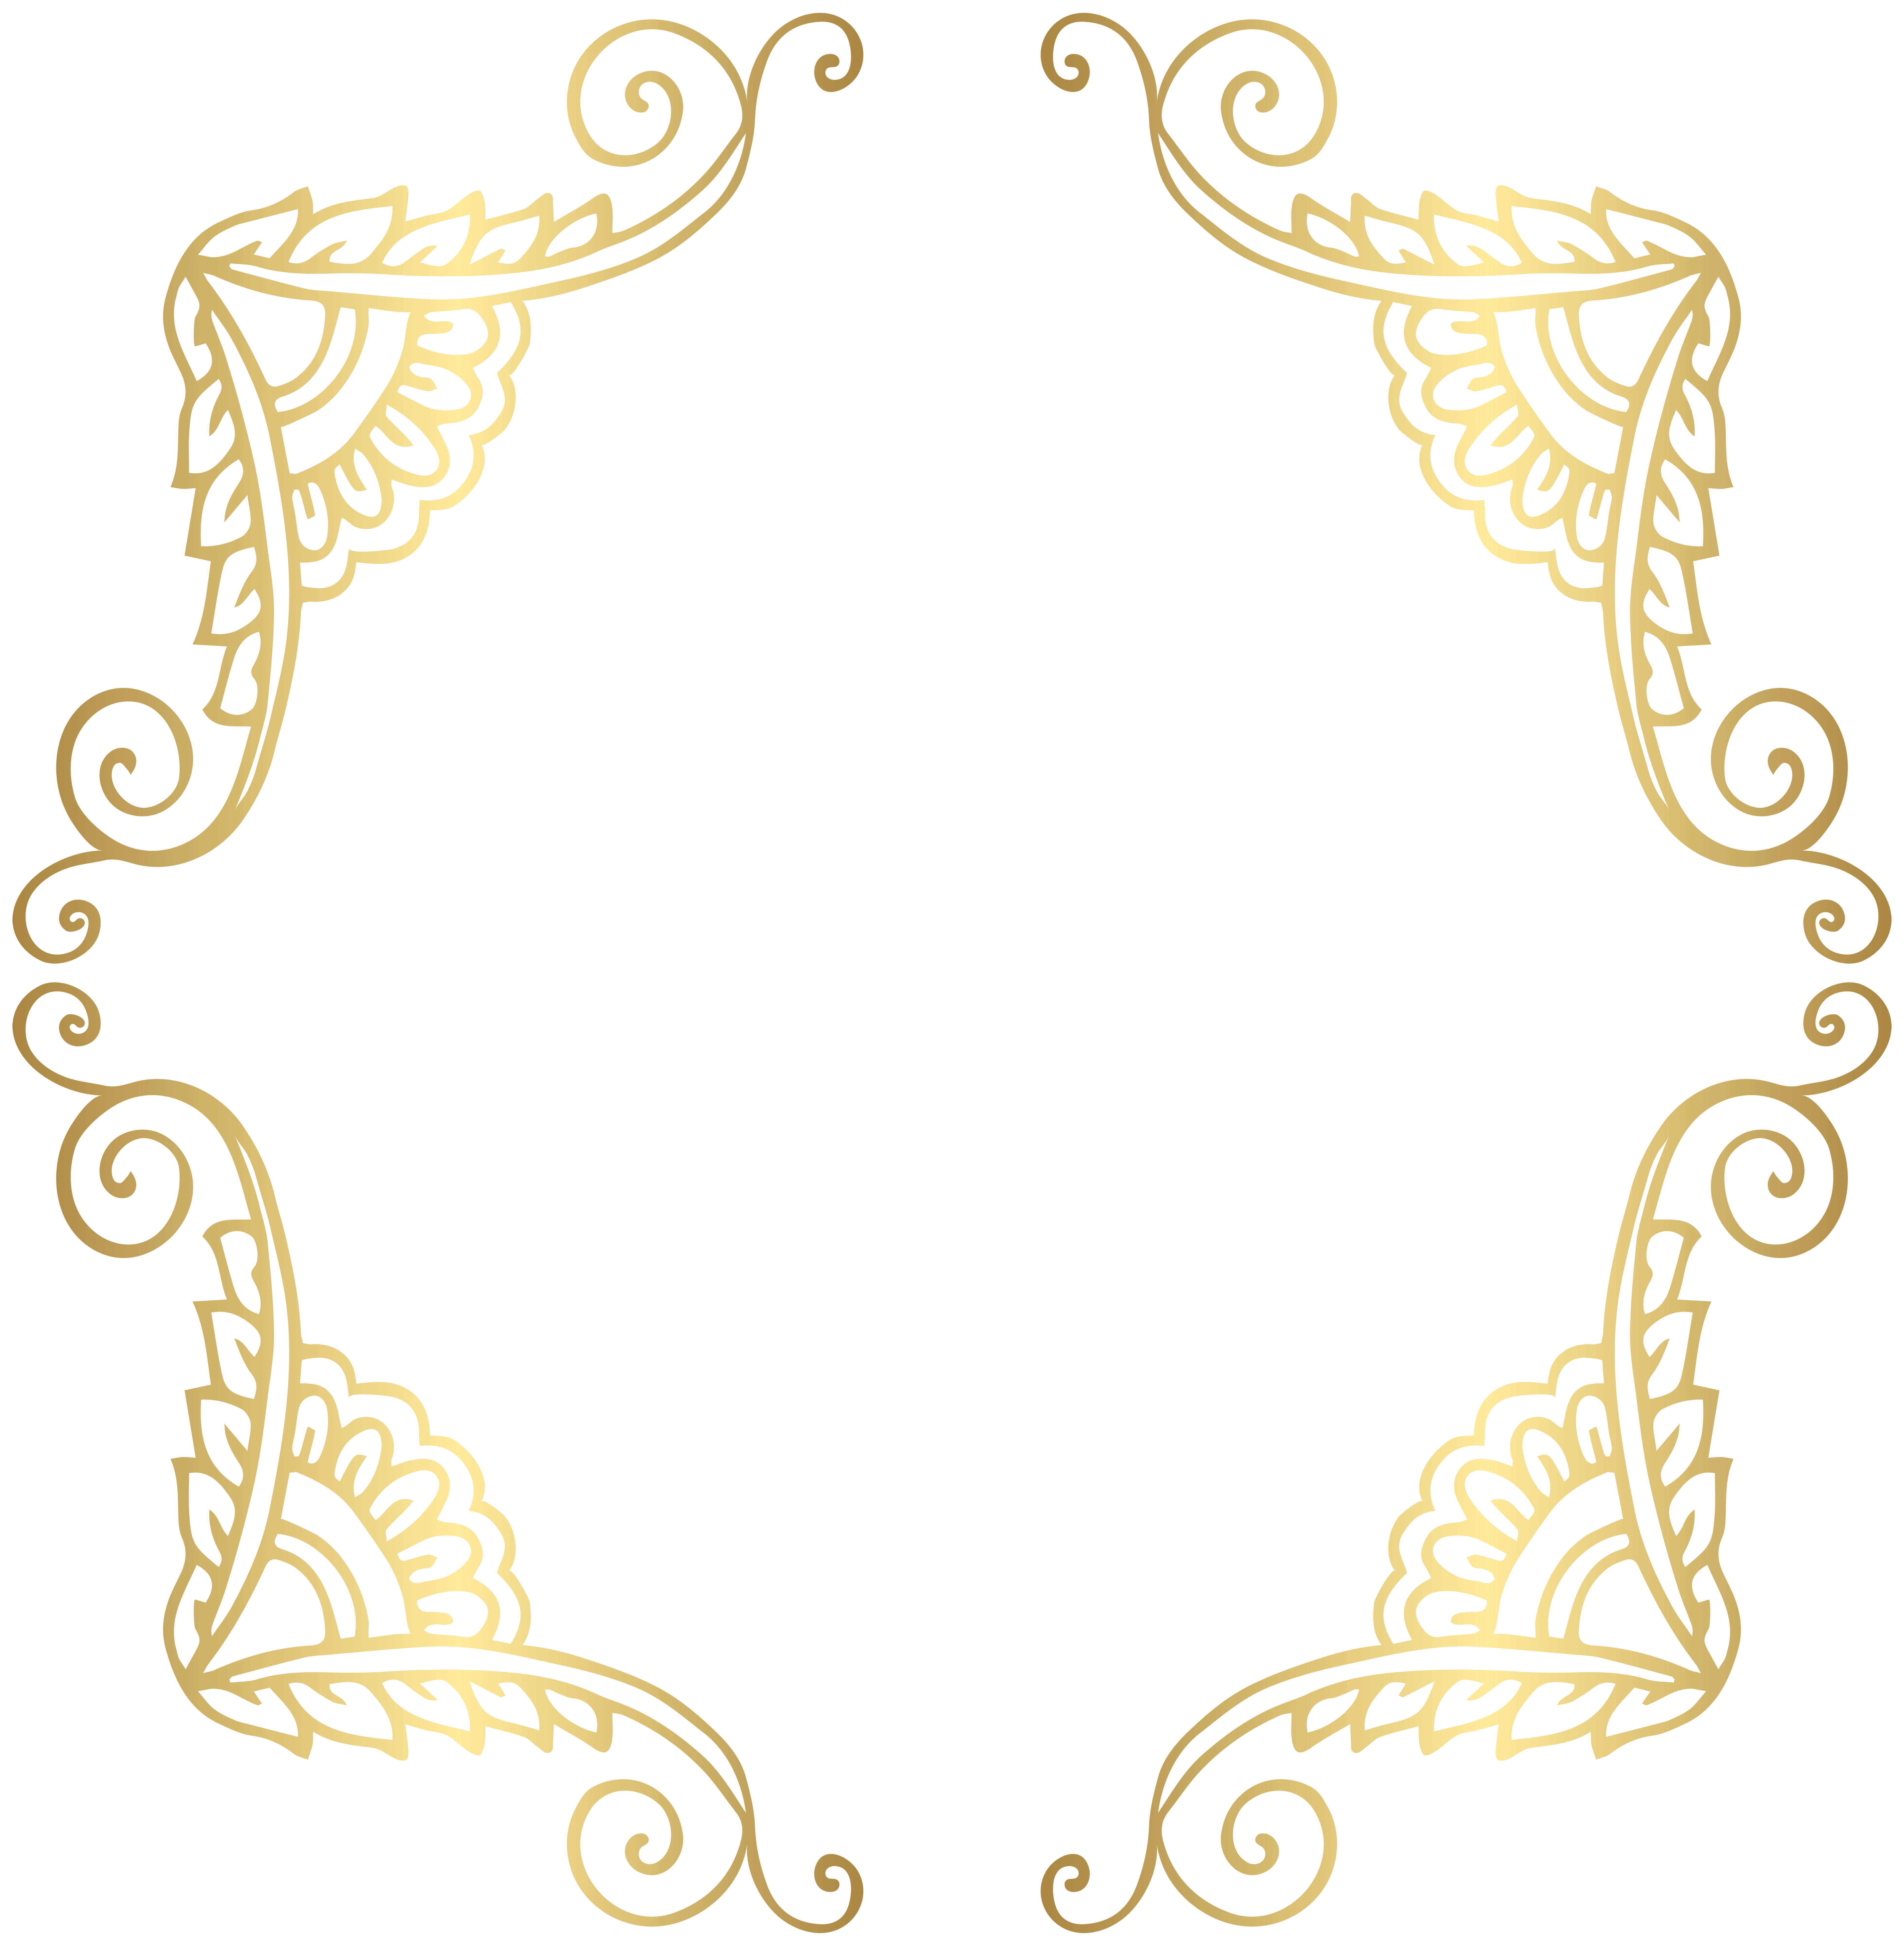 gold frame clip art